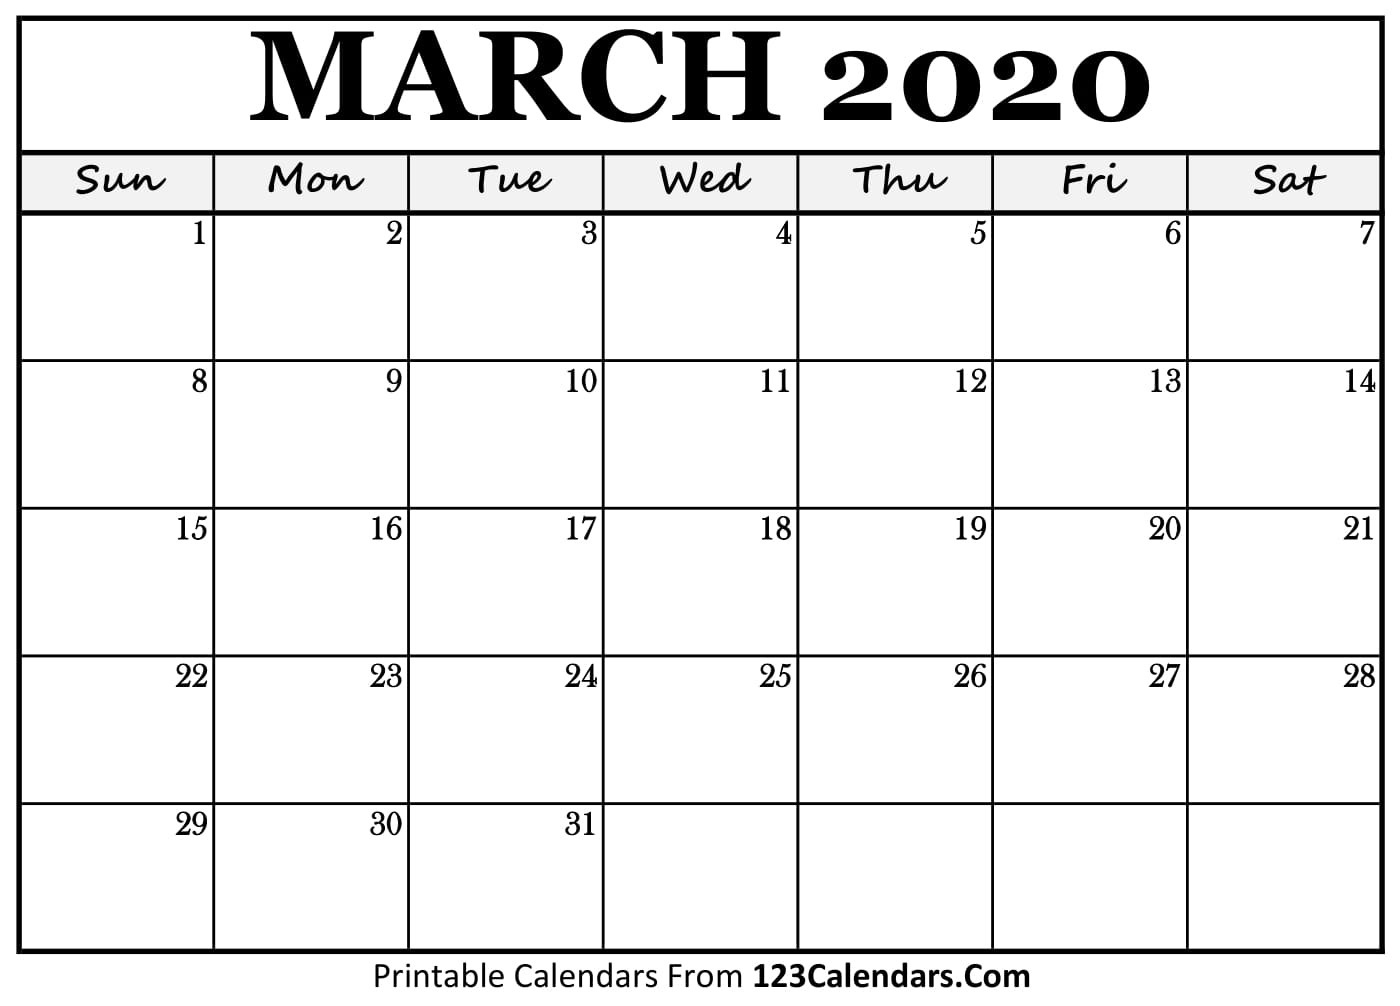 Printable Calendar March 2020 | Teekayshippingcorporation March 2020 Calendar Printable Org